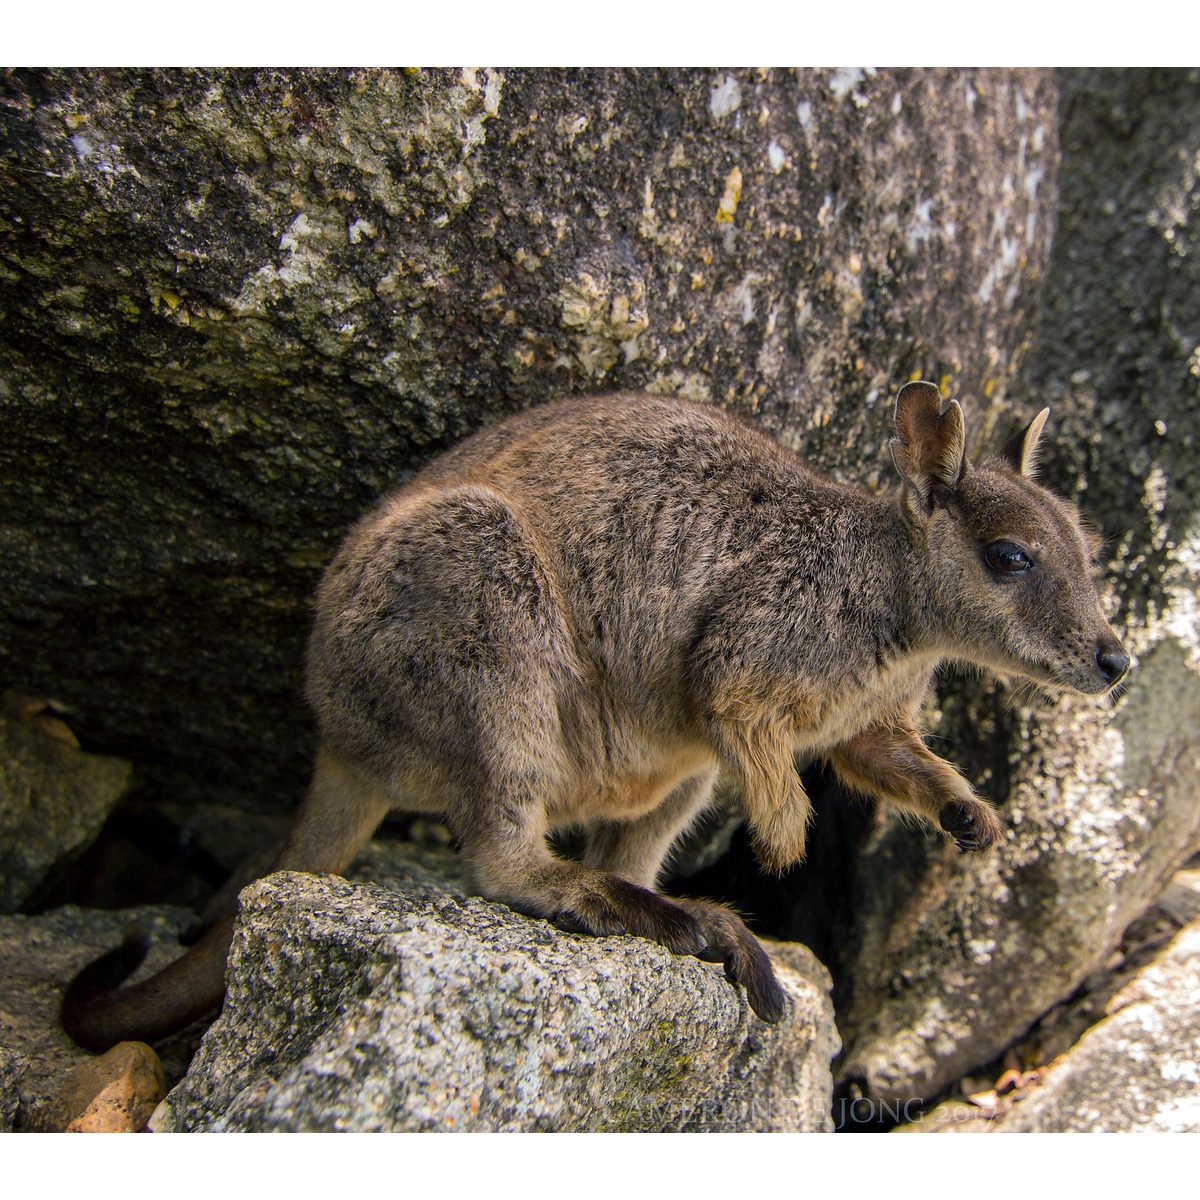 Mareeba Rock Wallaby (Petrogale mareeba) Фото №3